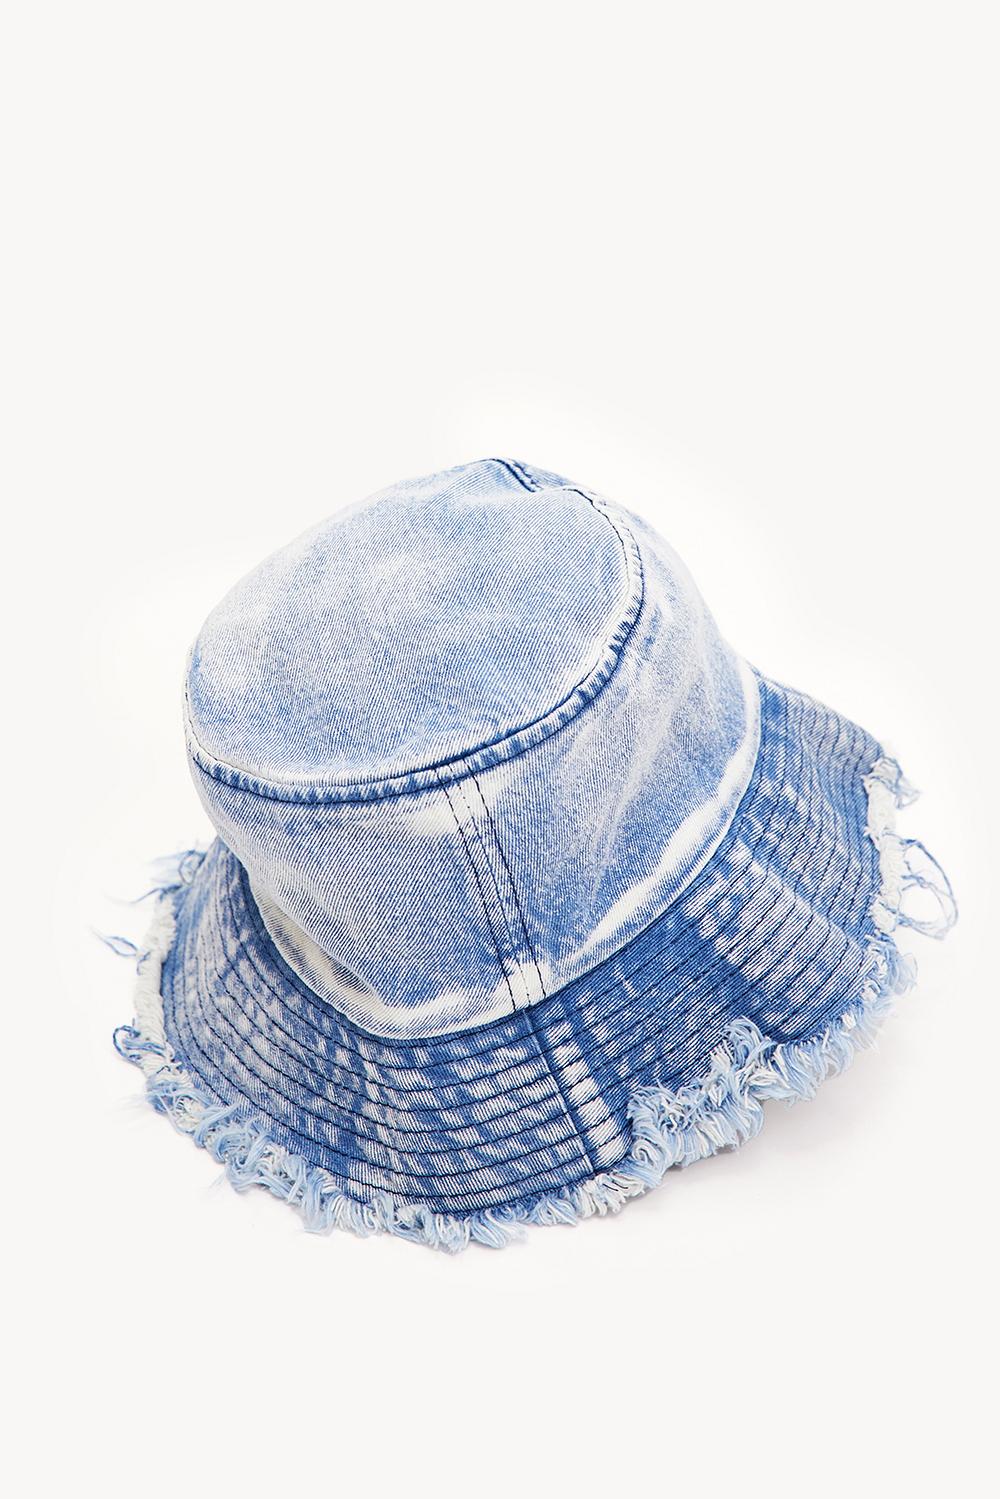 Blue denim bucket hat